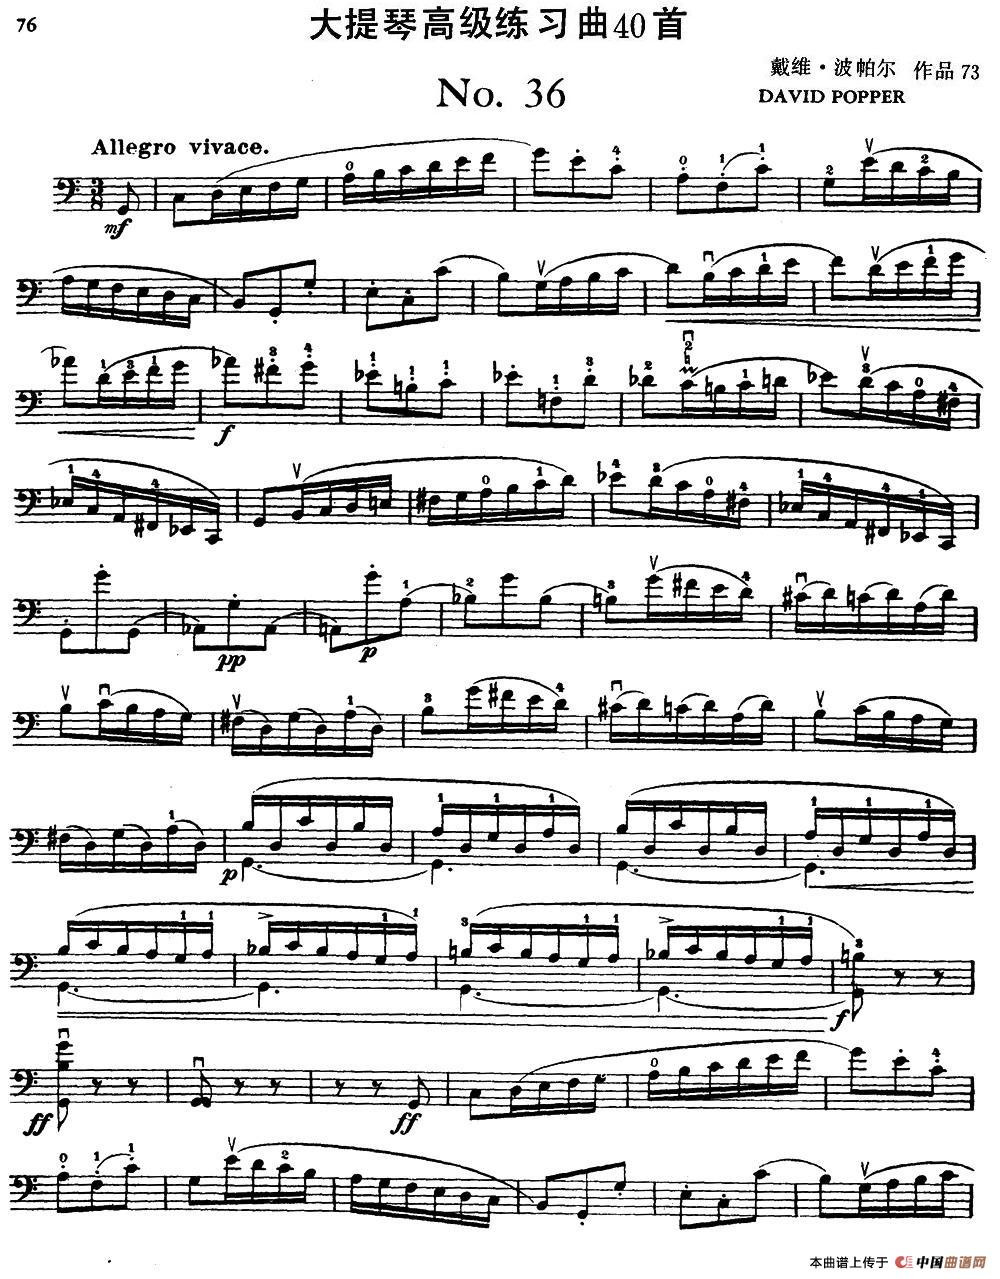 大提琴高级练习曲40首 No.36